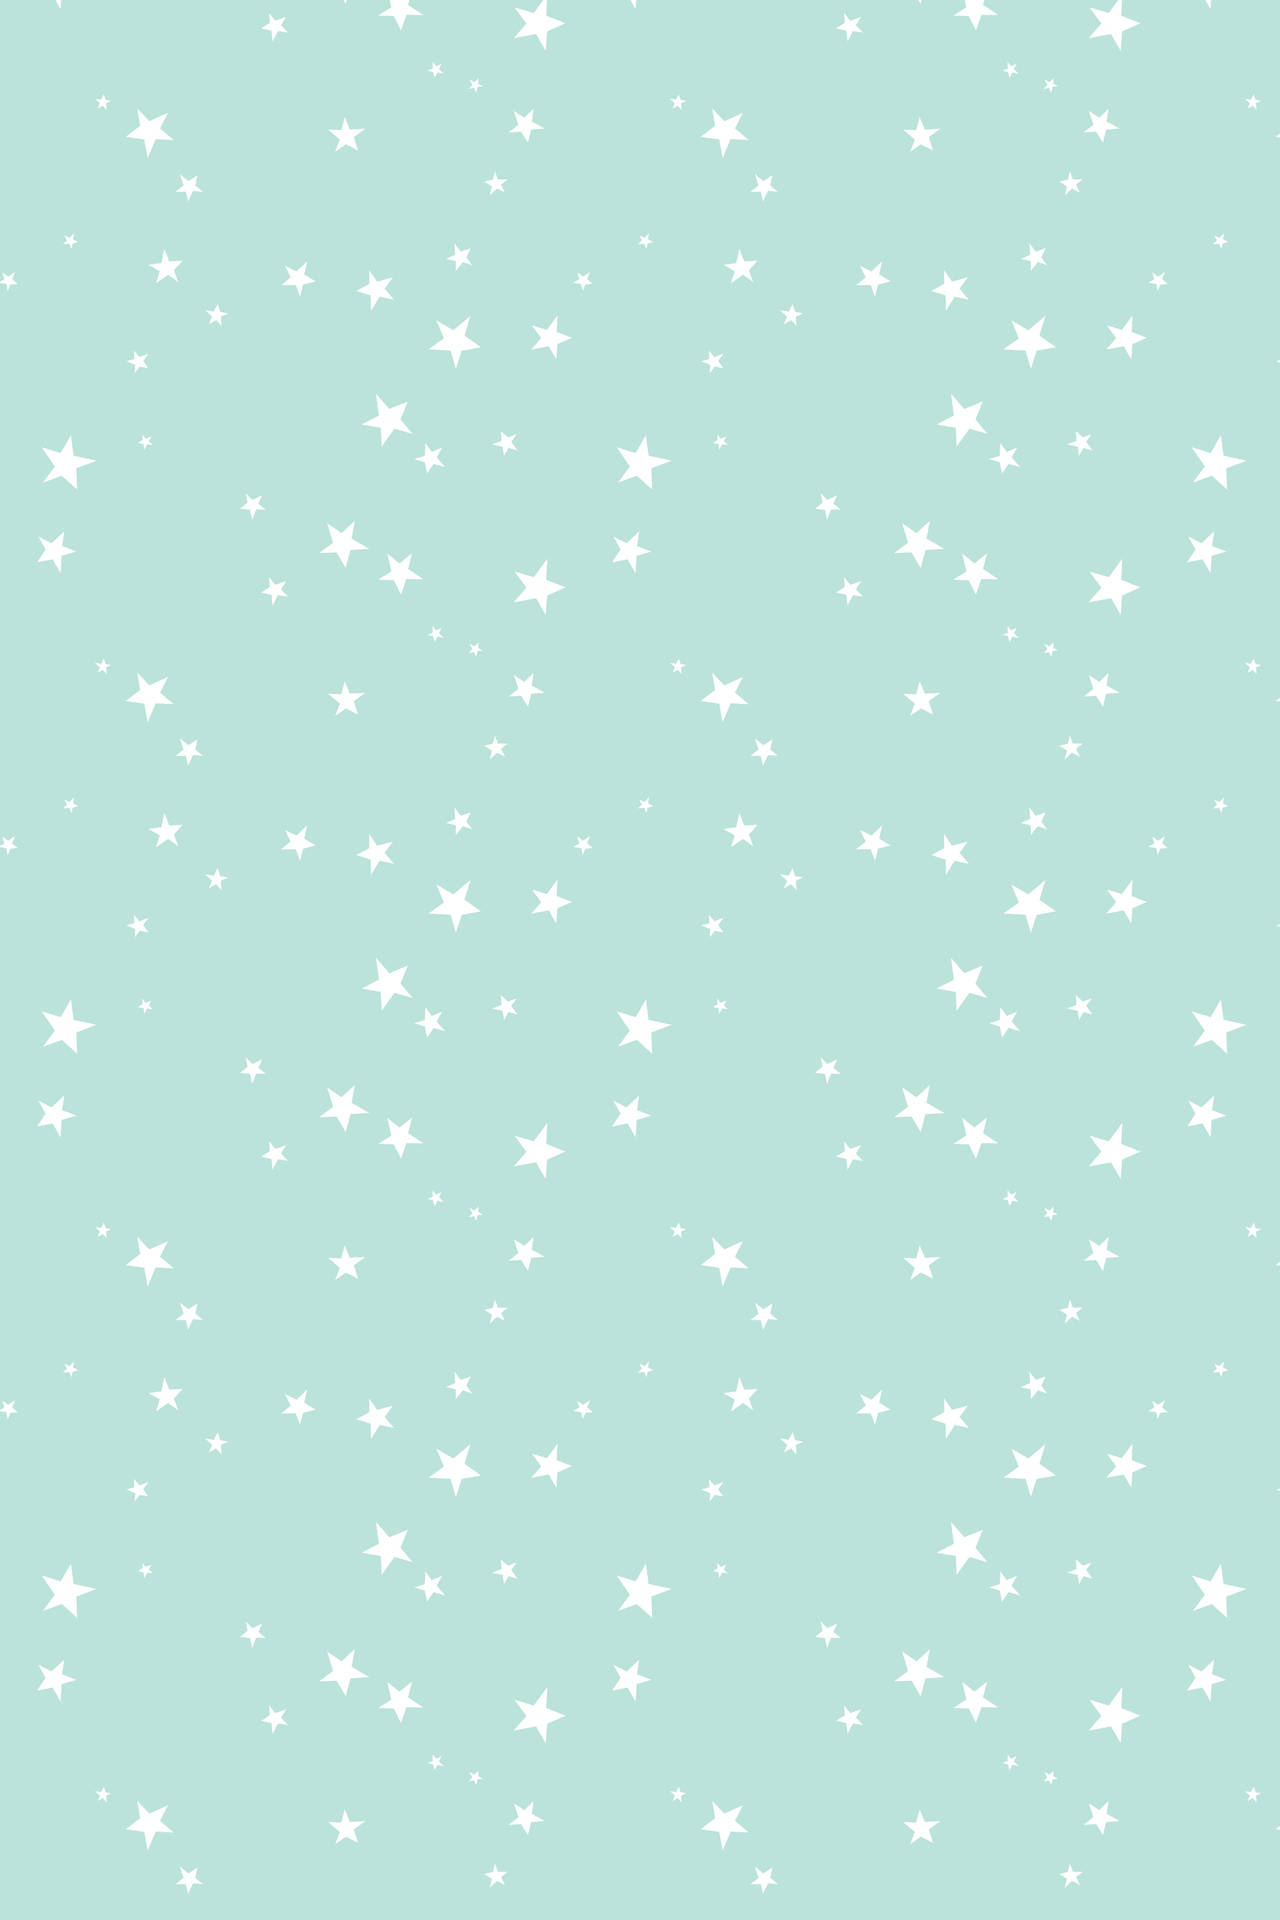 Kleineweiße Sterne Auf Pastellgrün Wallpaper